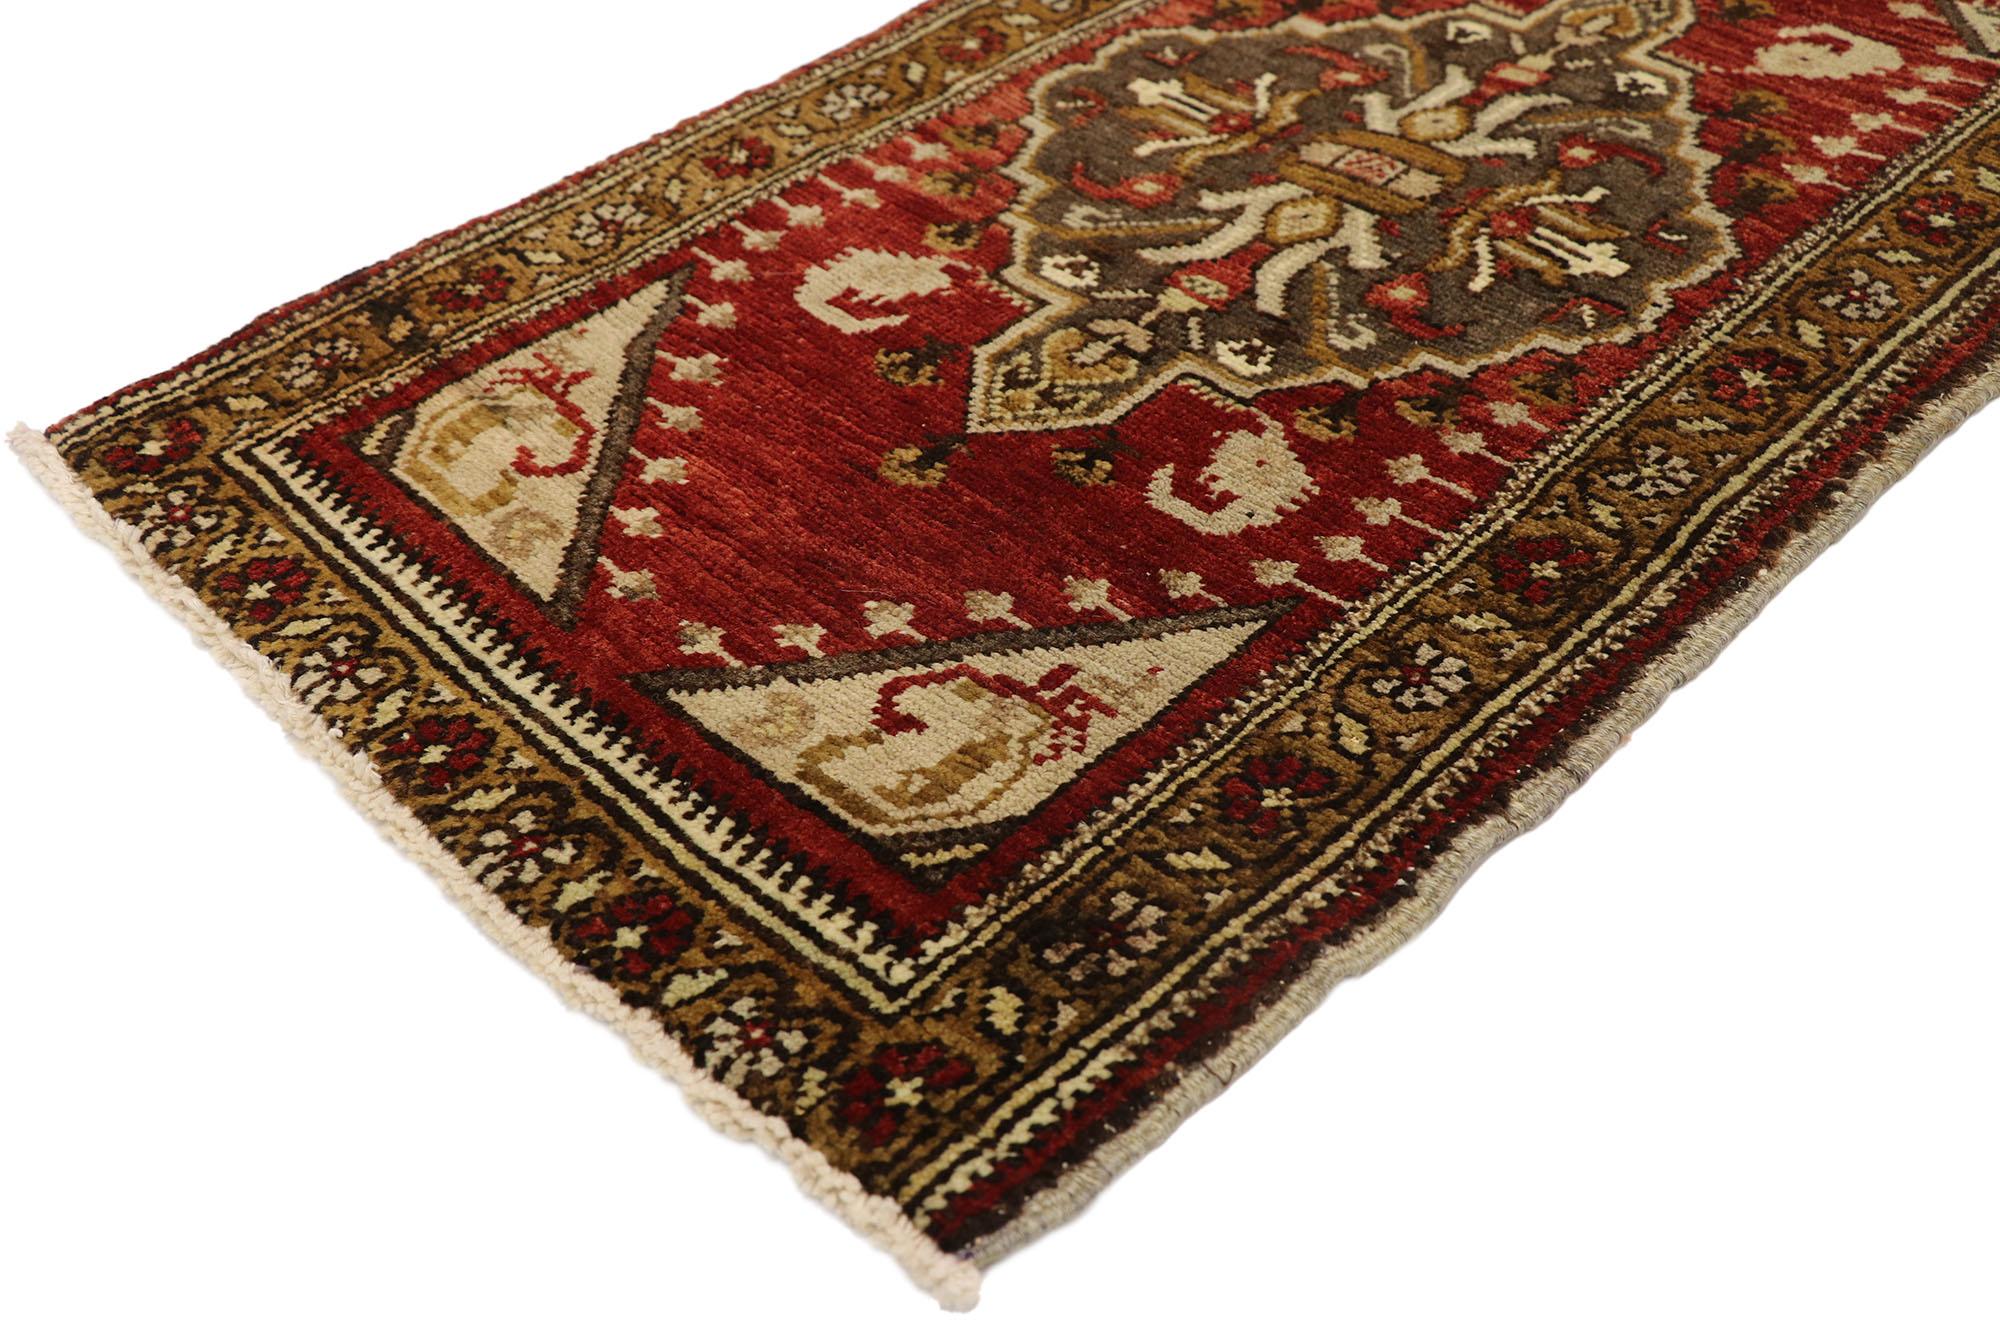 51263 Türkischer Yastik-Teppich Vintage, 01'07 x 02'11. Türkische Yastik-Teppiche, auch als 